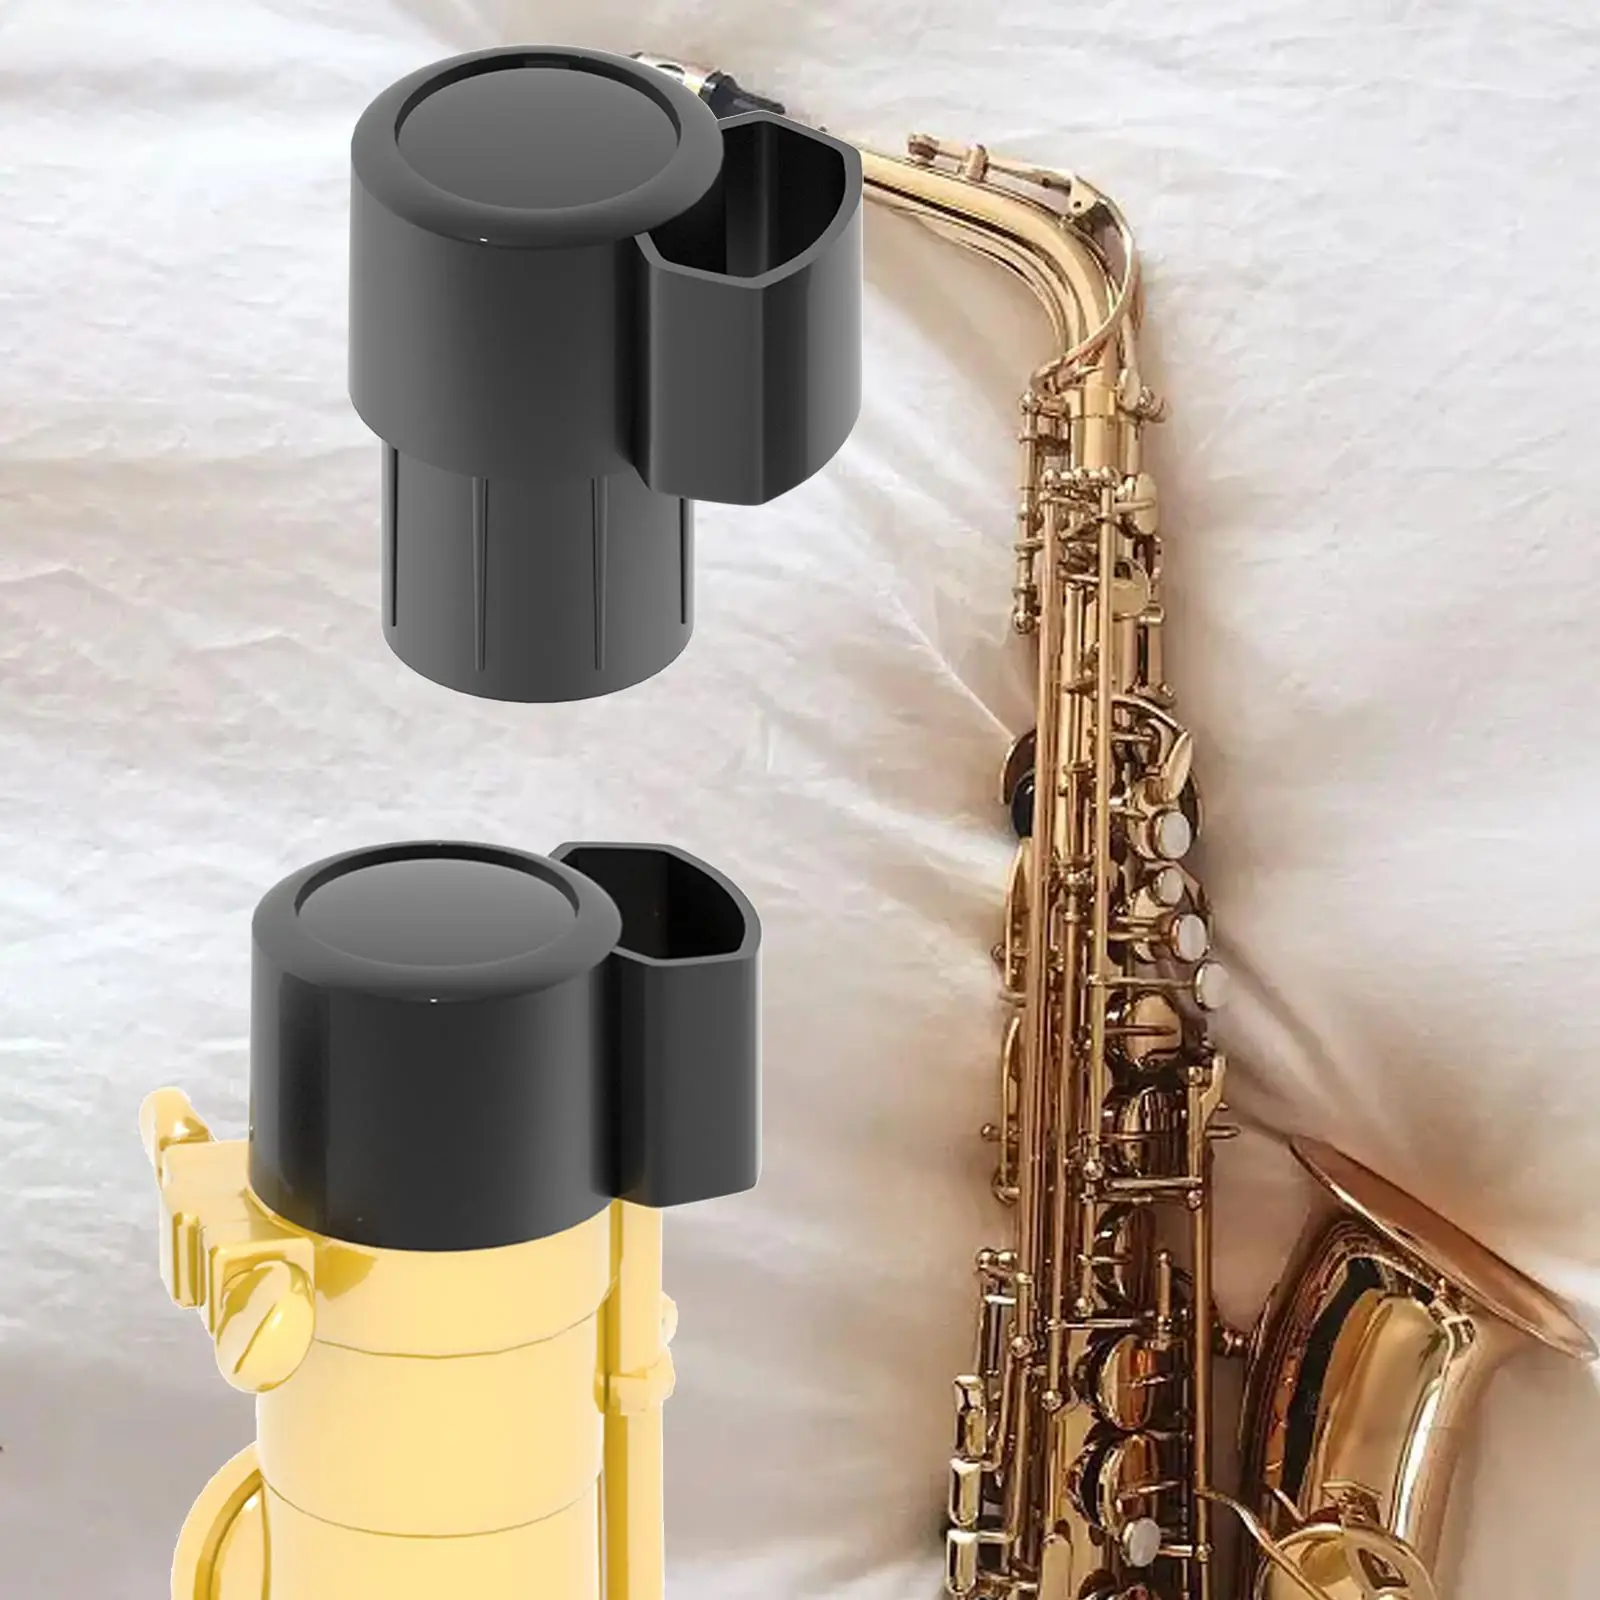 

Alto Sax Торцевая заглушка Sax Защитная крышка профессиональная заглушка для саксофона